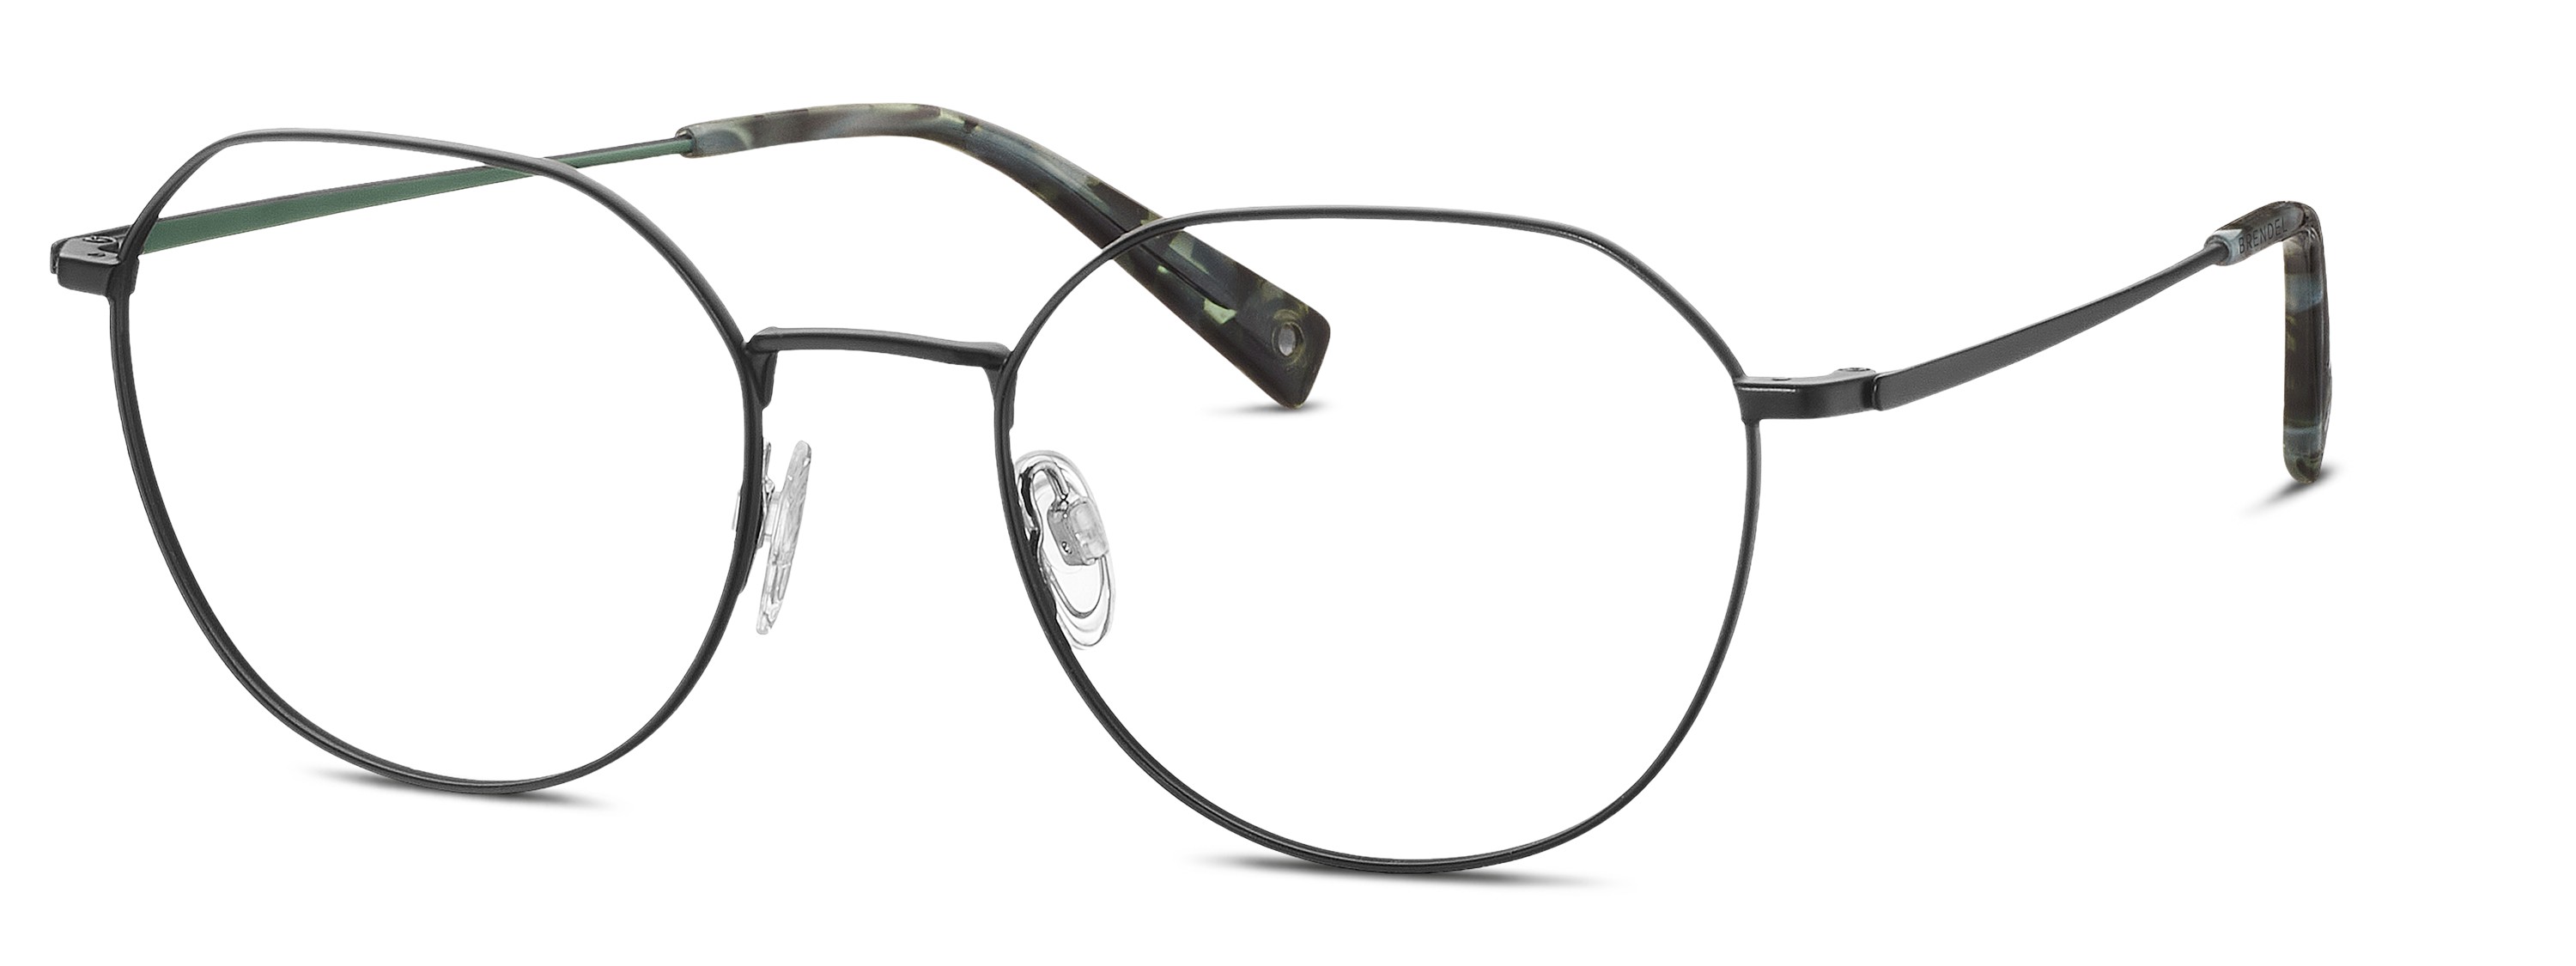 BRENDEL eyewear - 902399-10